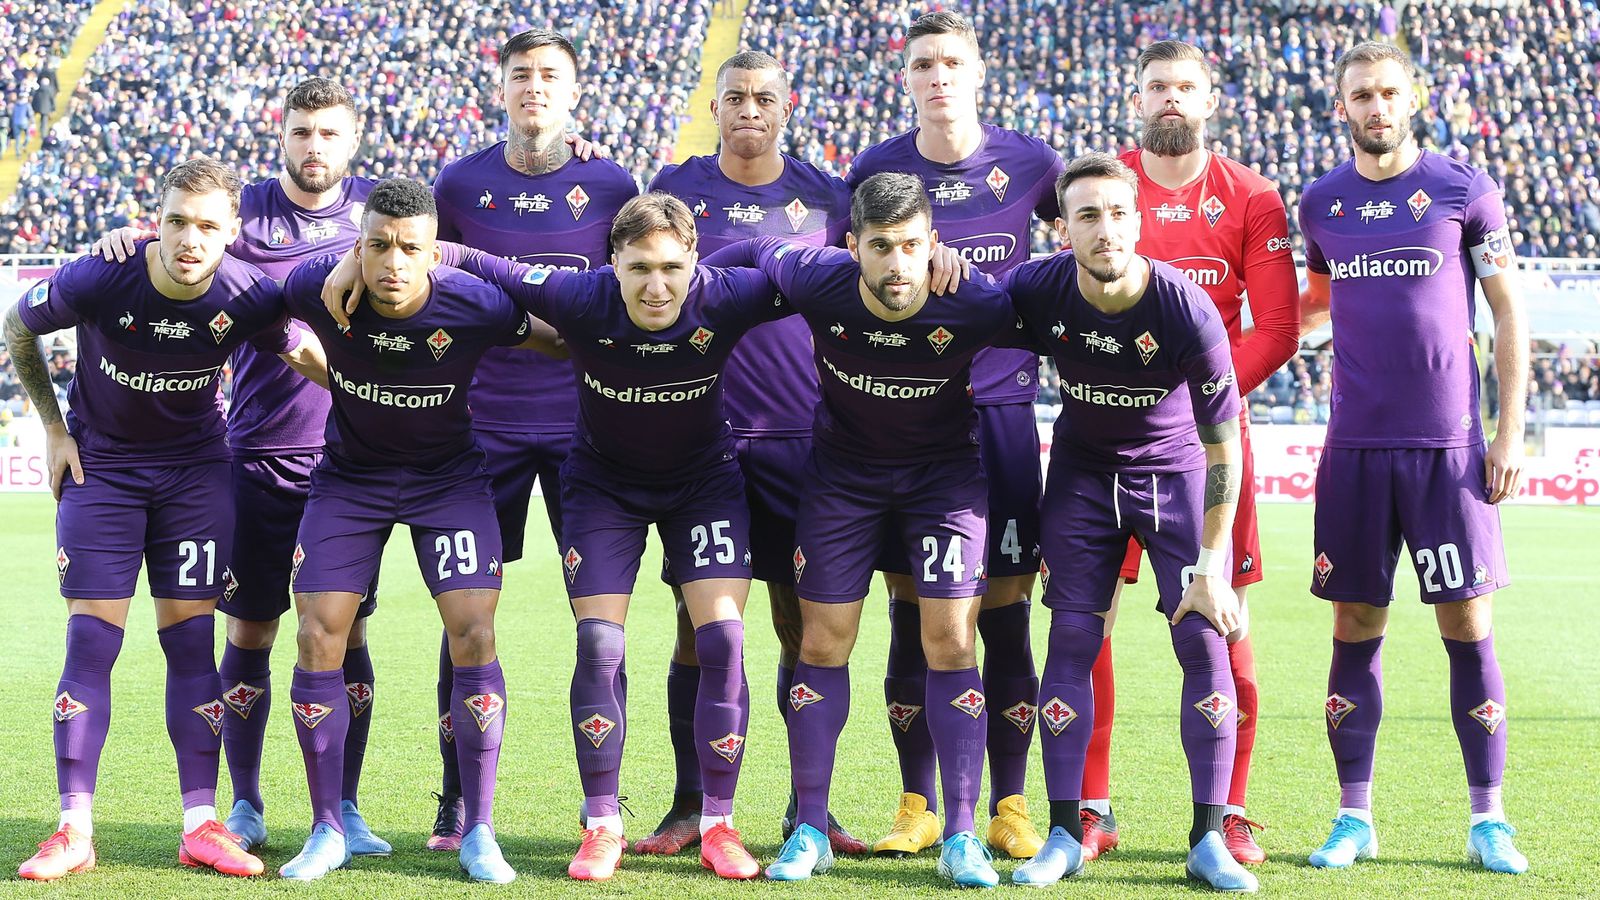 ACF Fiorentina - ACF Fiorentina added a new photo.